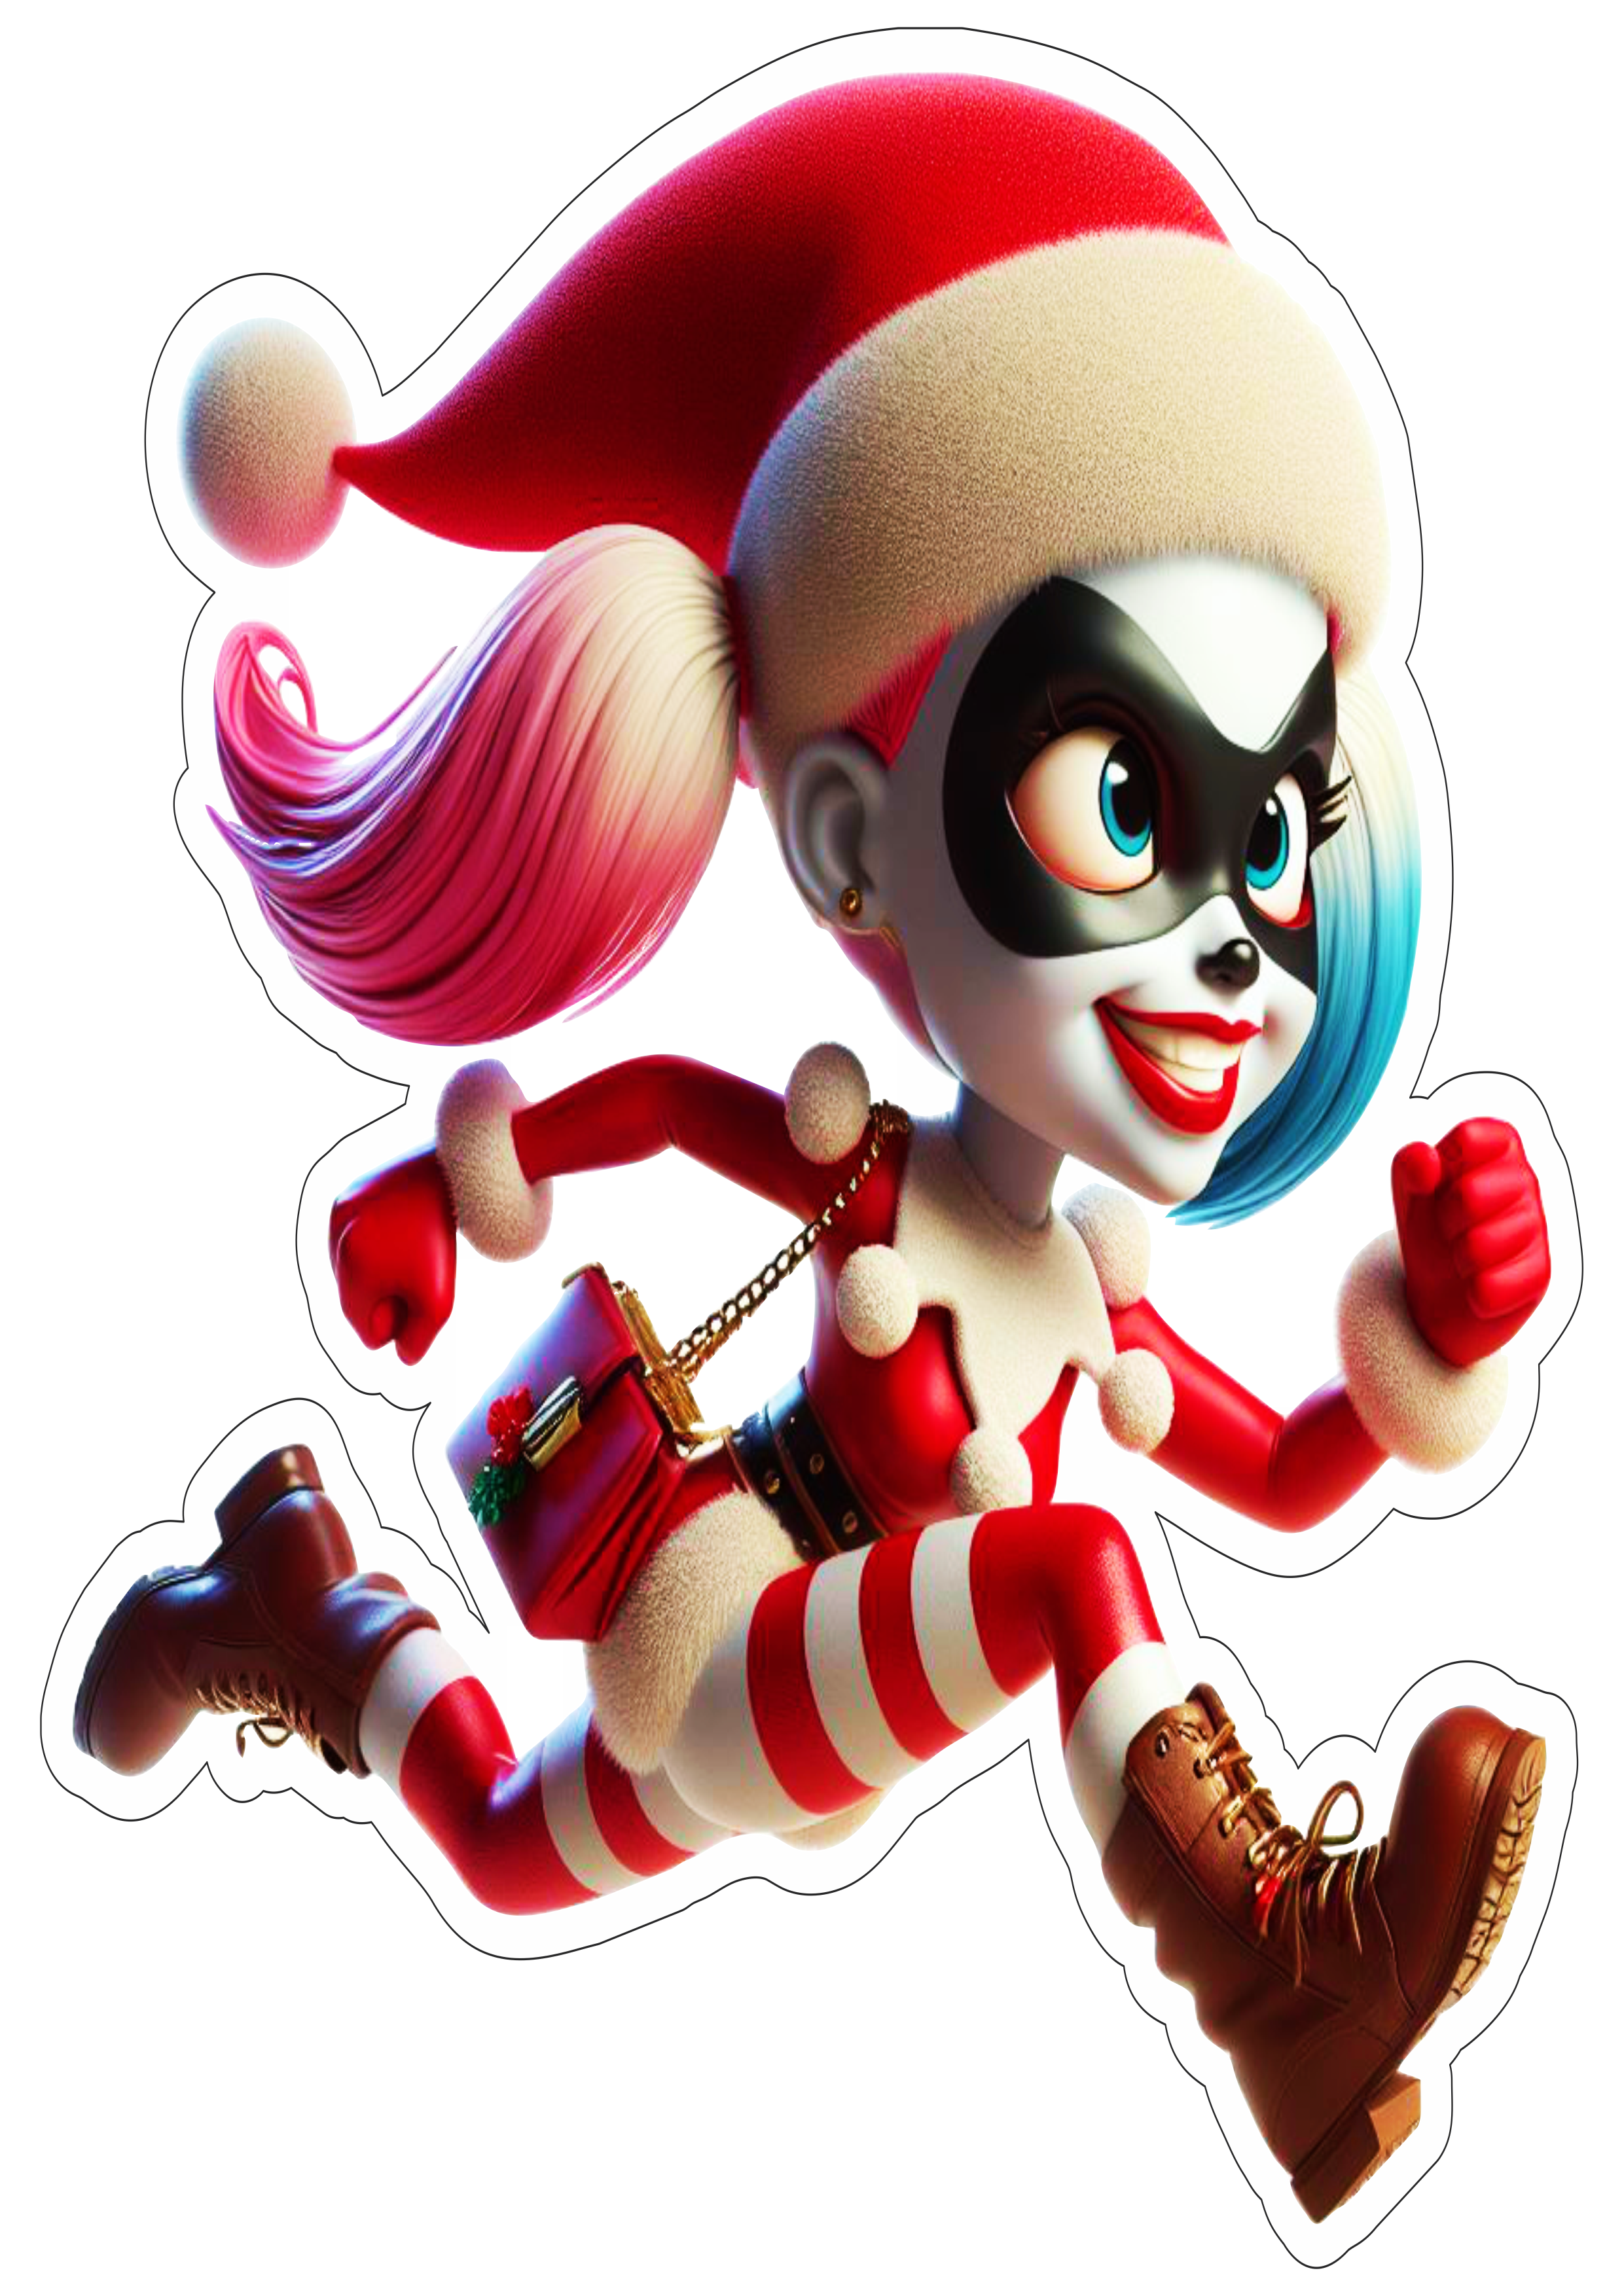 Arlequina Harley Quinn correndo especial de natal fundo transparente clipart vetor animação dc comics png